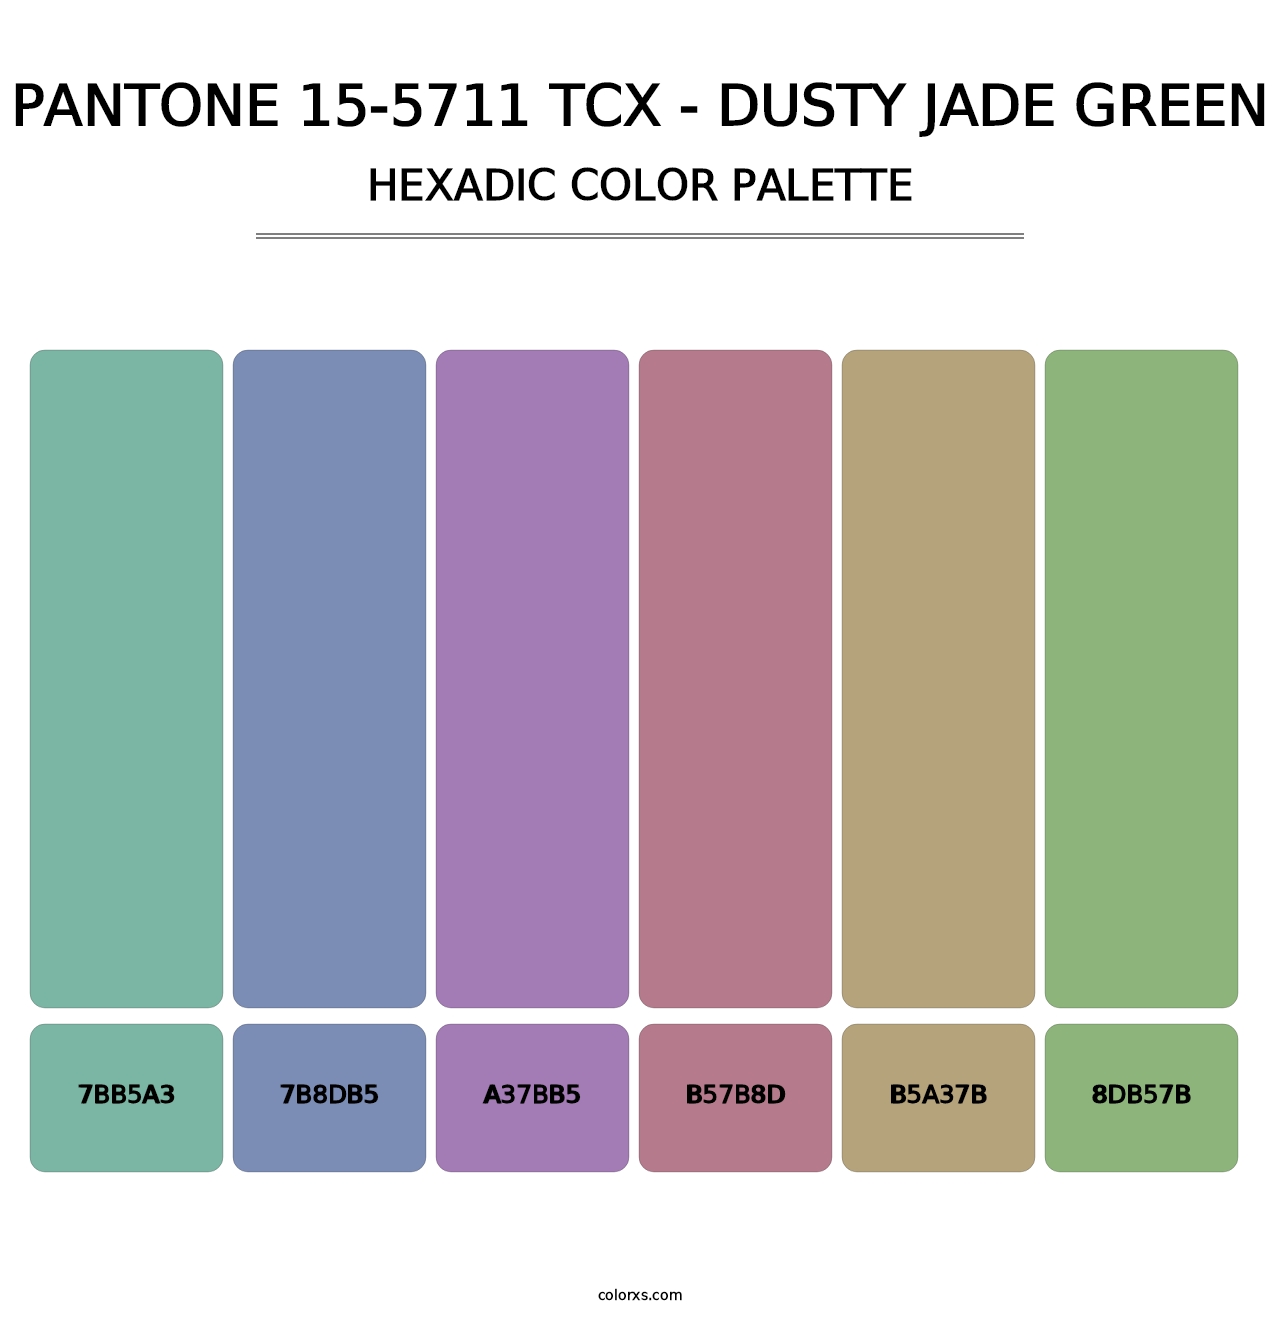 PANTONE 15-5711 TCX - Dusty Jade Green - Hexadic Color Palette